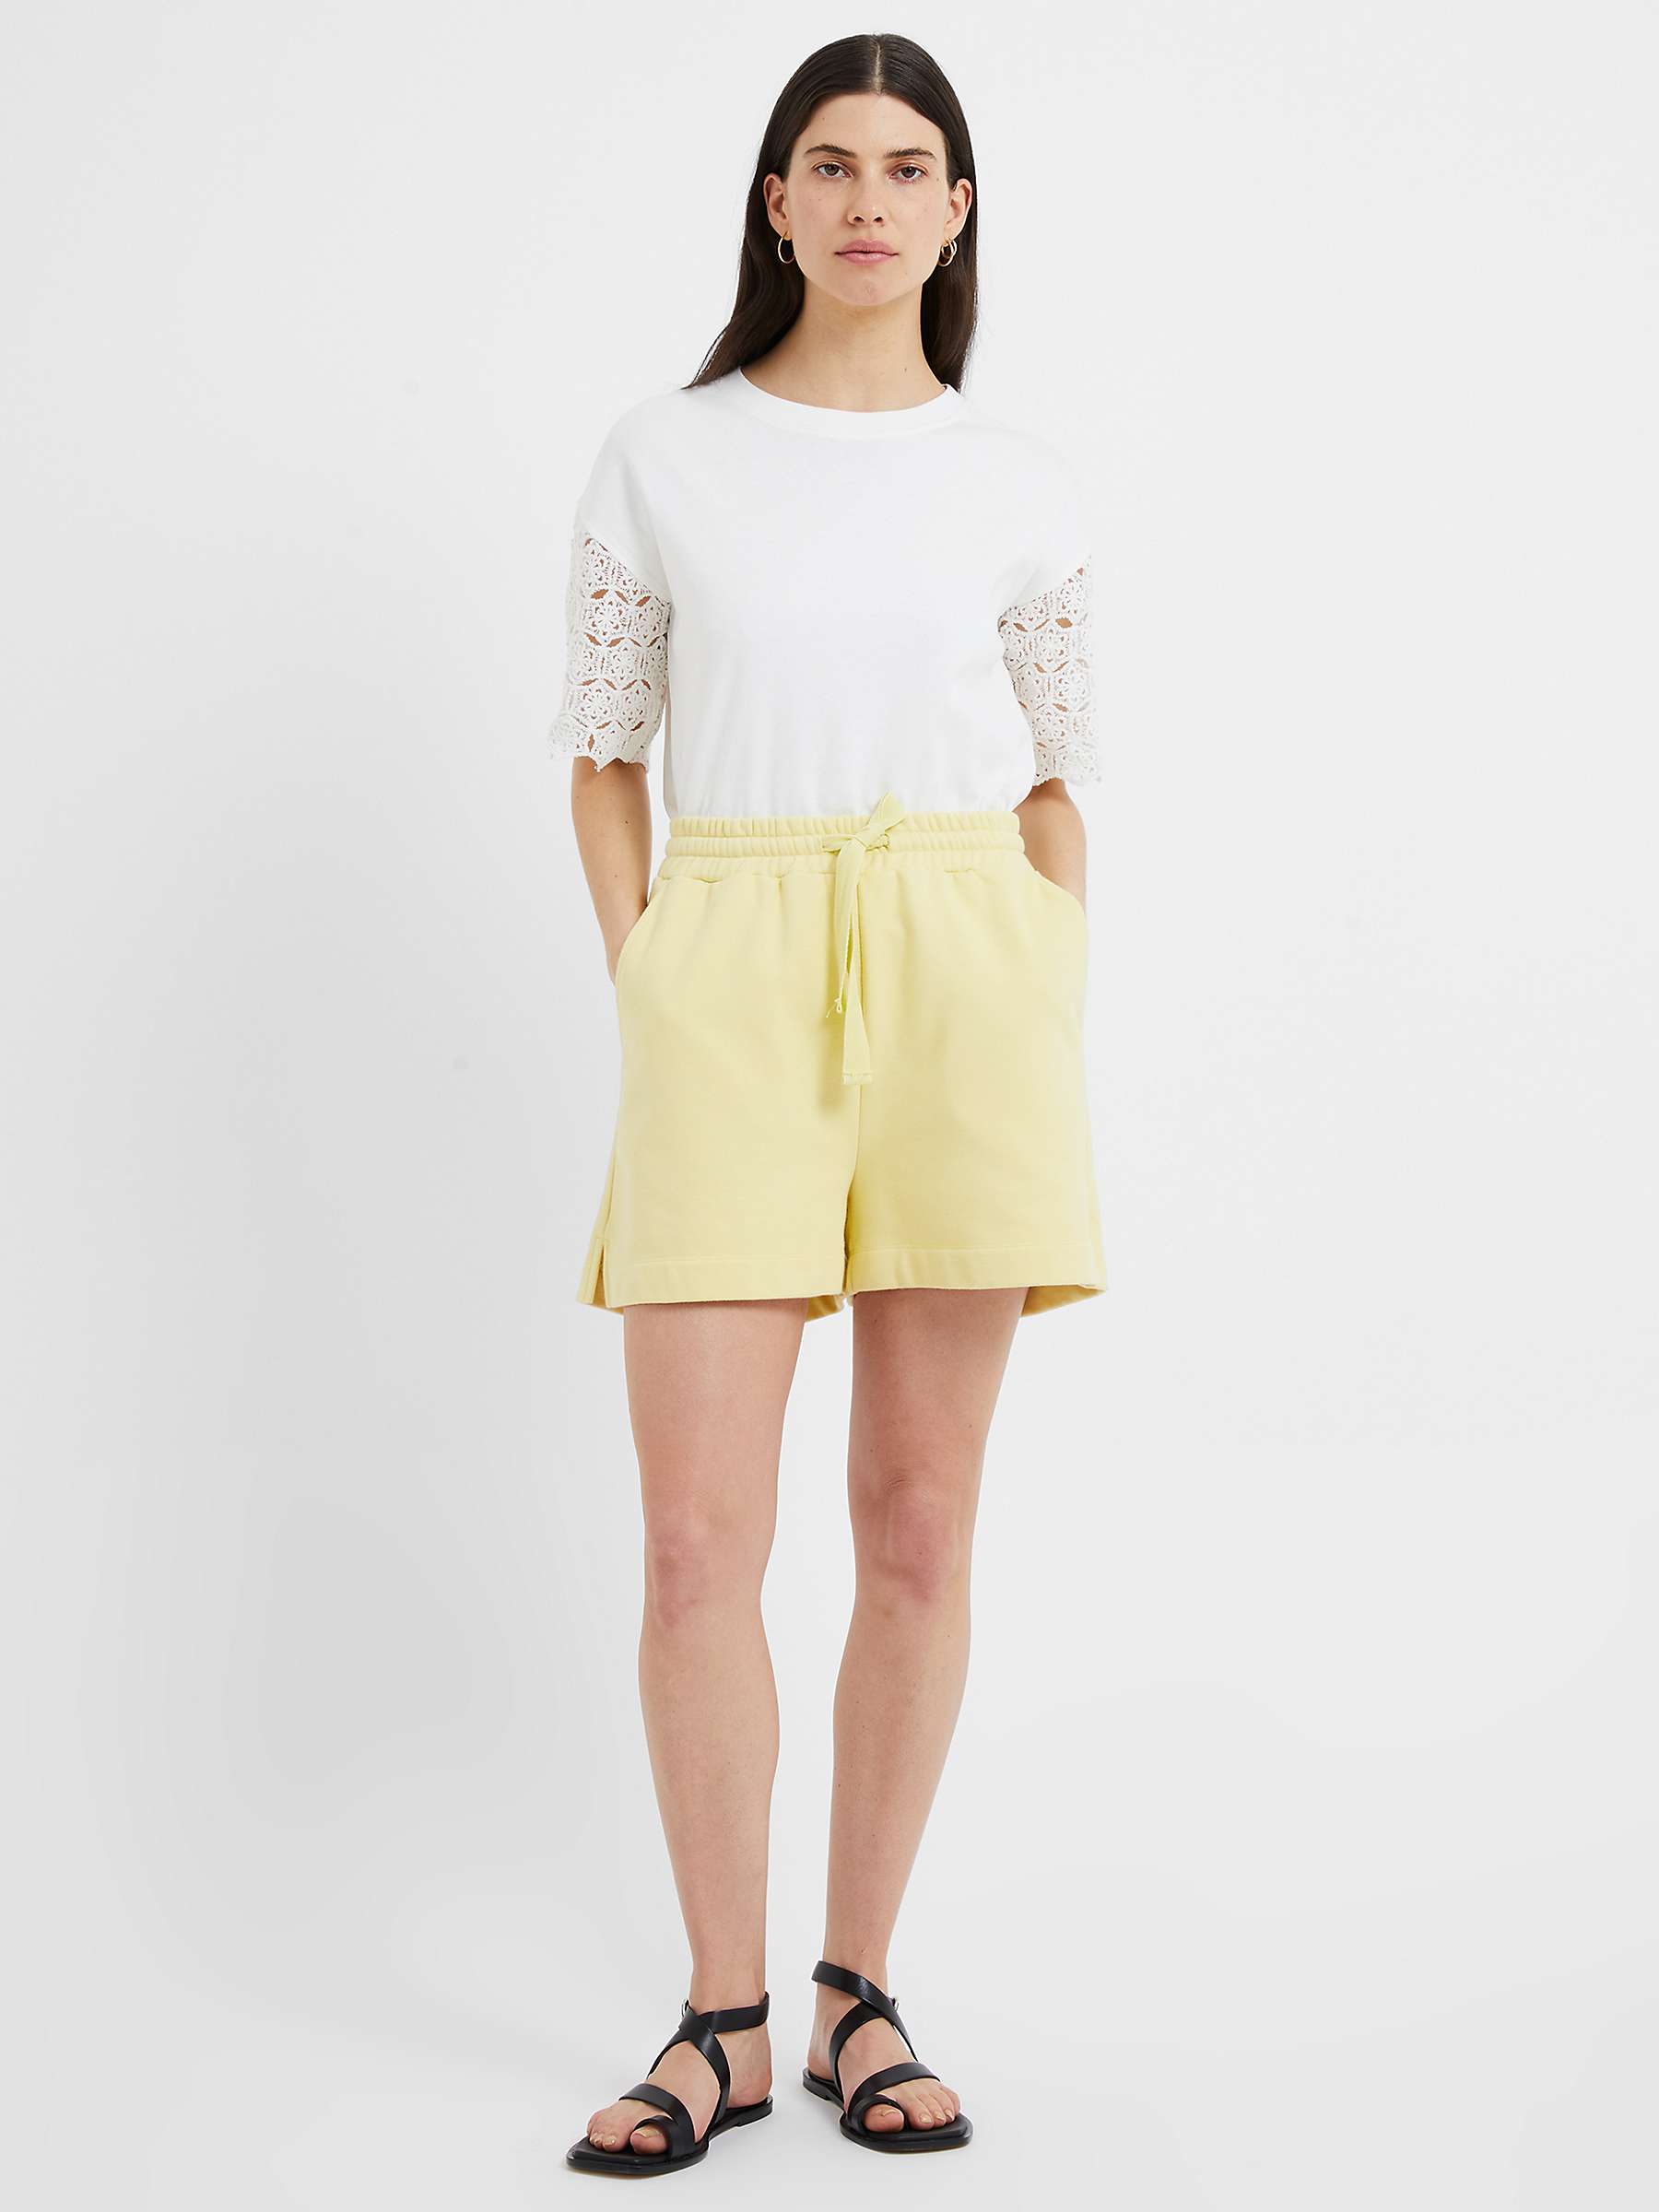 Buy Great Plains Paloma Cotton Blend Shorts, Lemon Grass Online at johnlewis.com